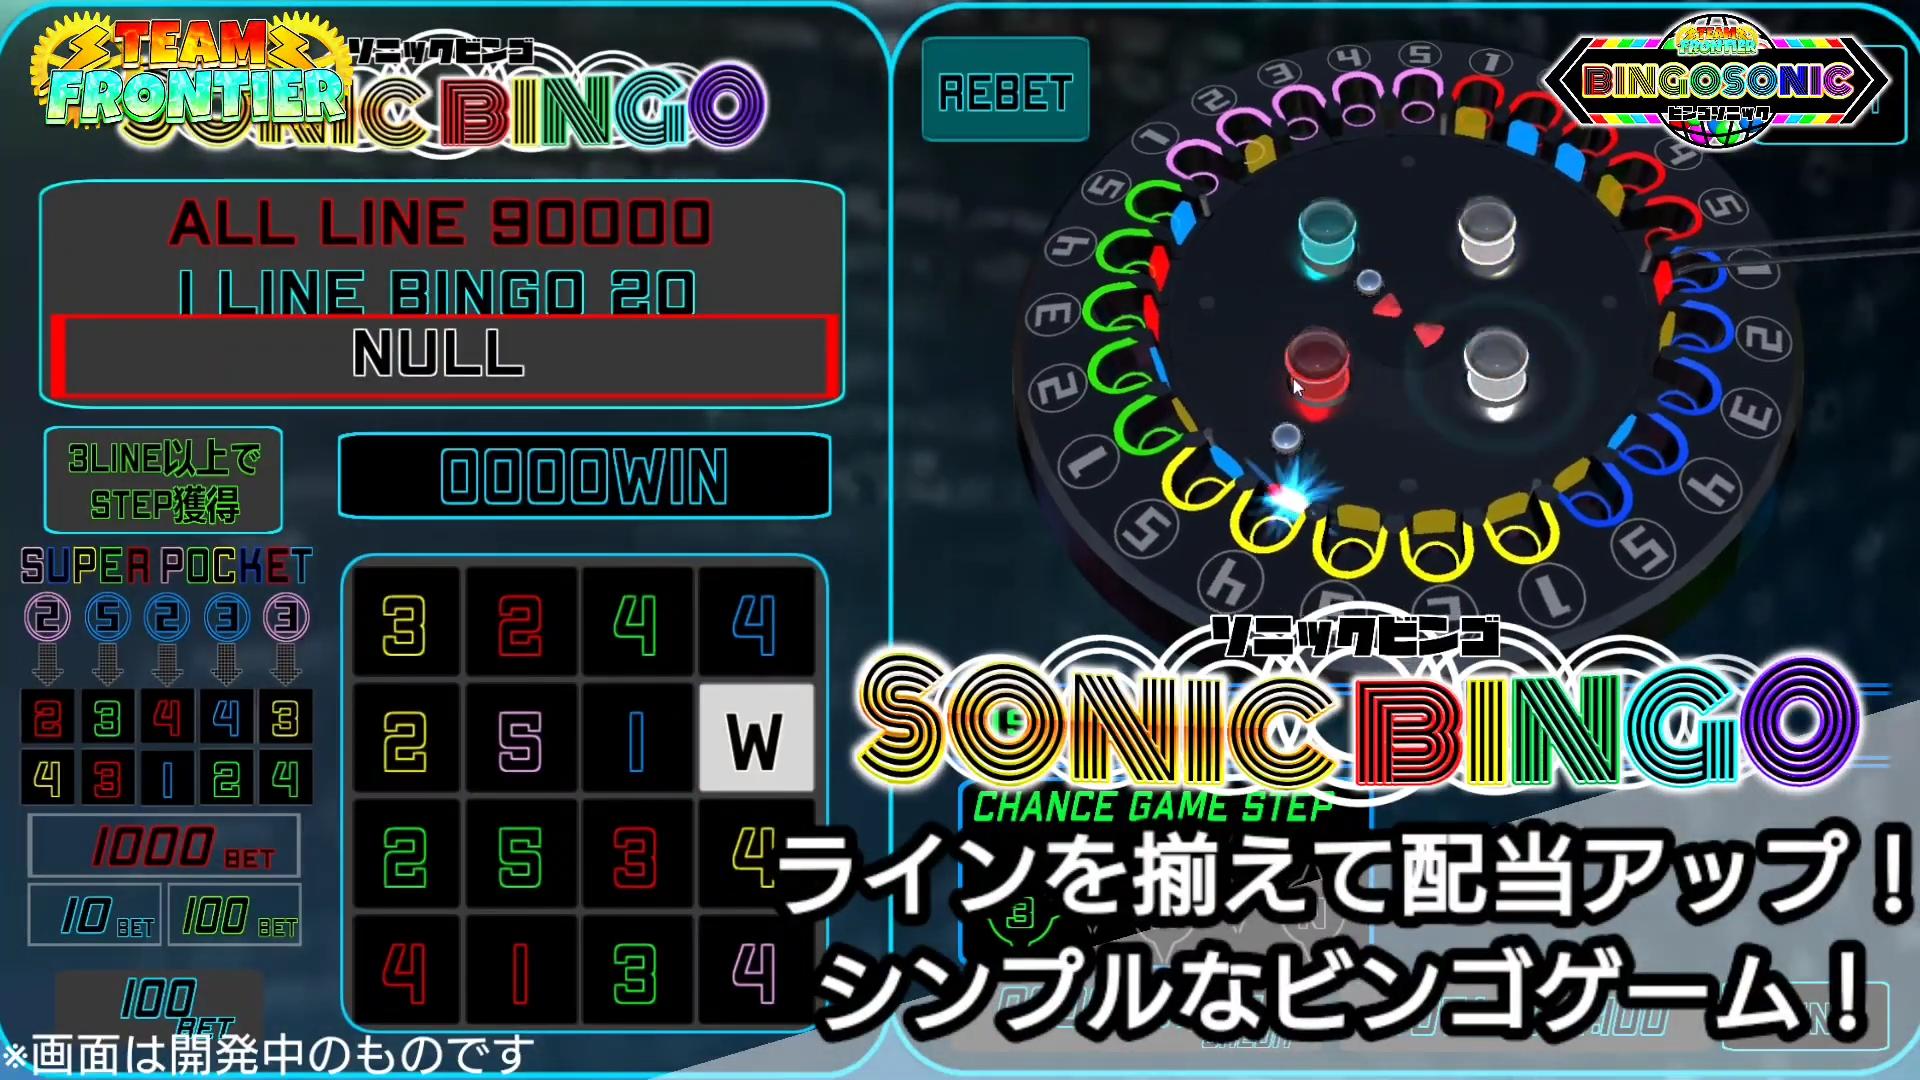 BINGOSONIC【無料メダルゲーム】 1.04 Screenshot 14